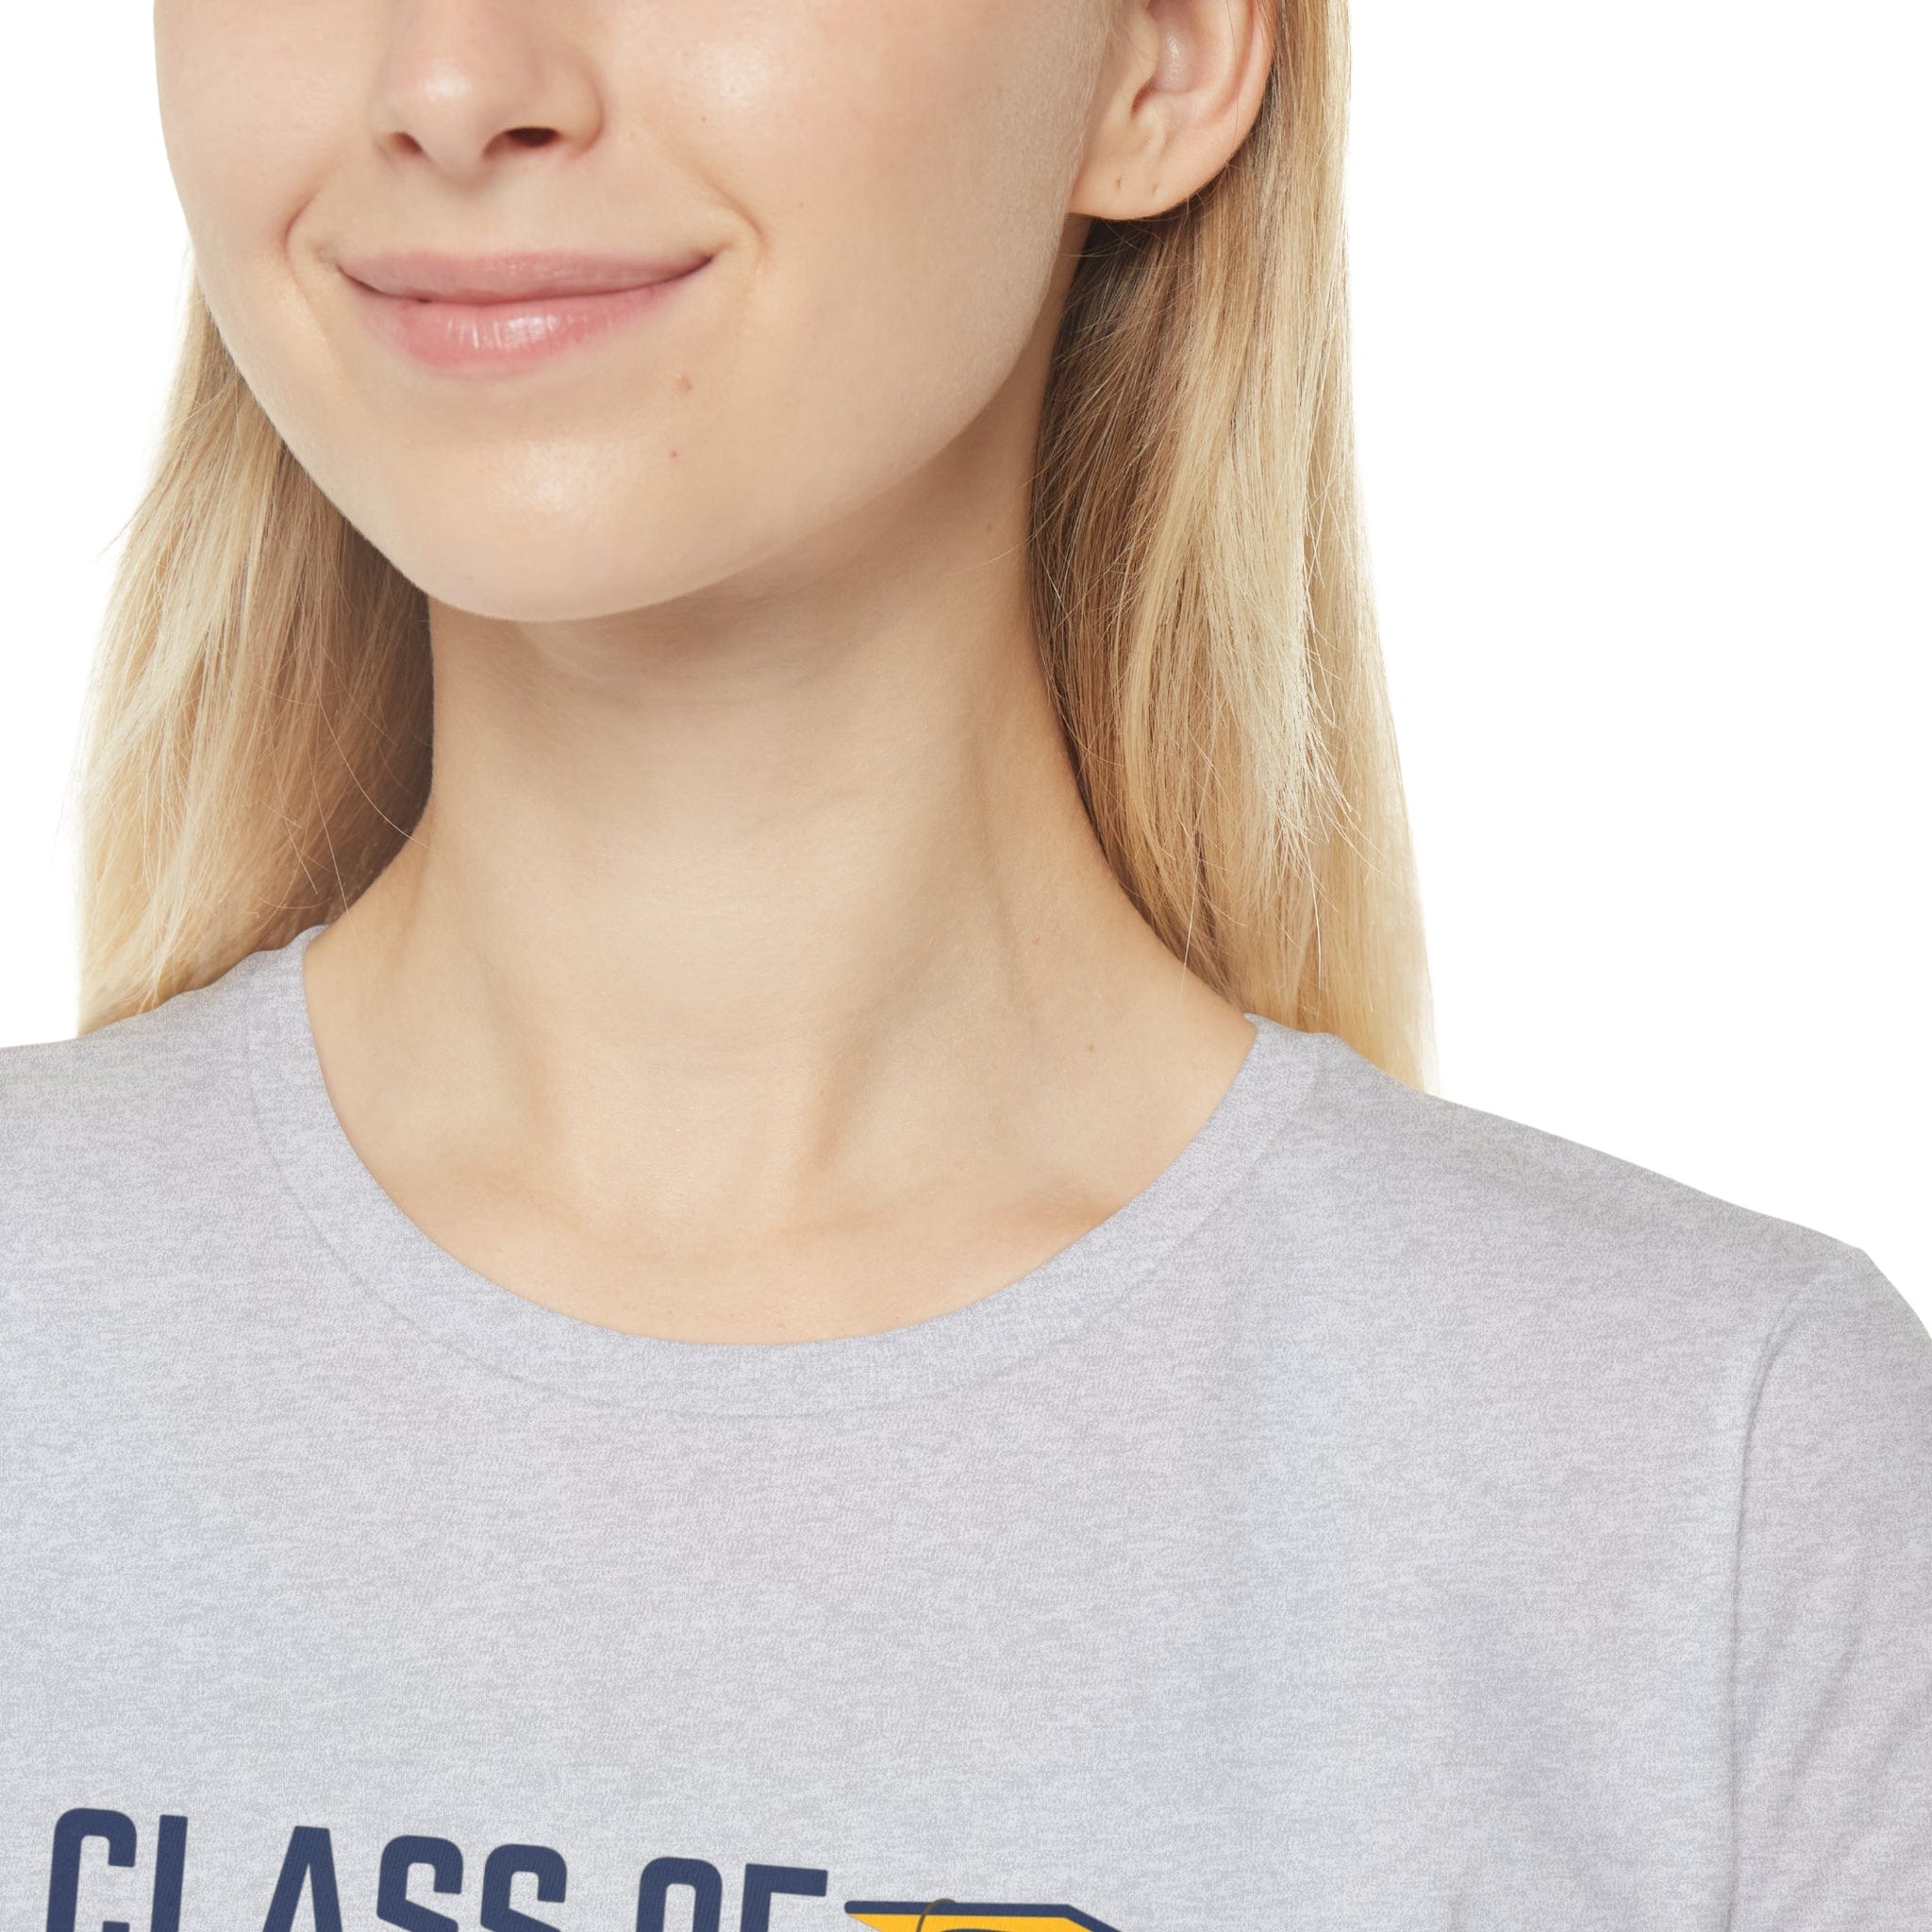 Printify T-Shirt Class of 2023! - Women's Iconic T-Shirt